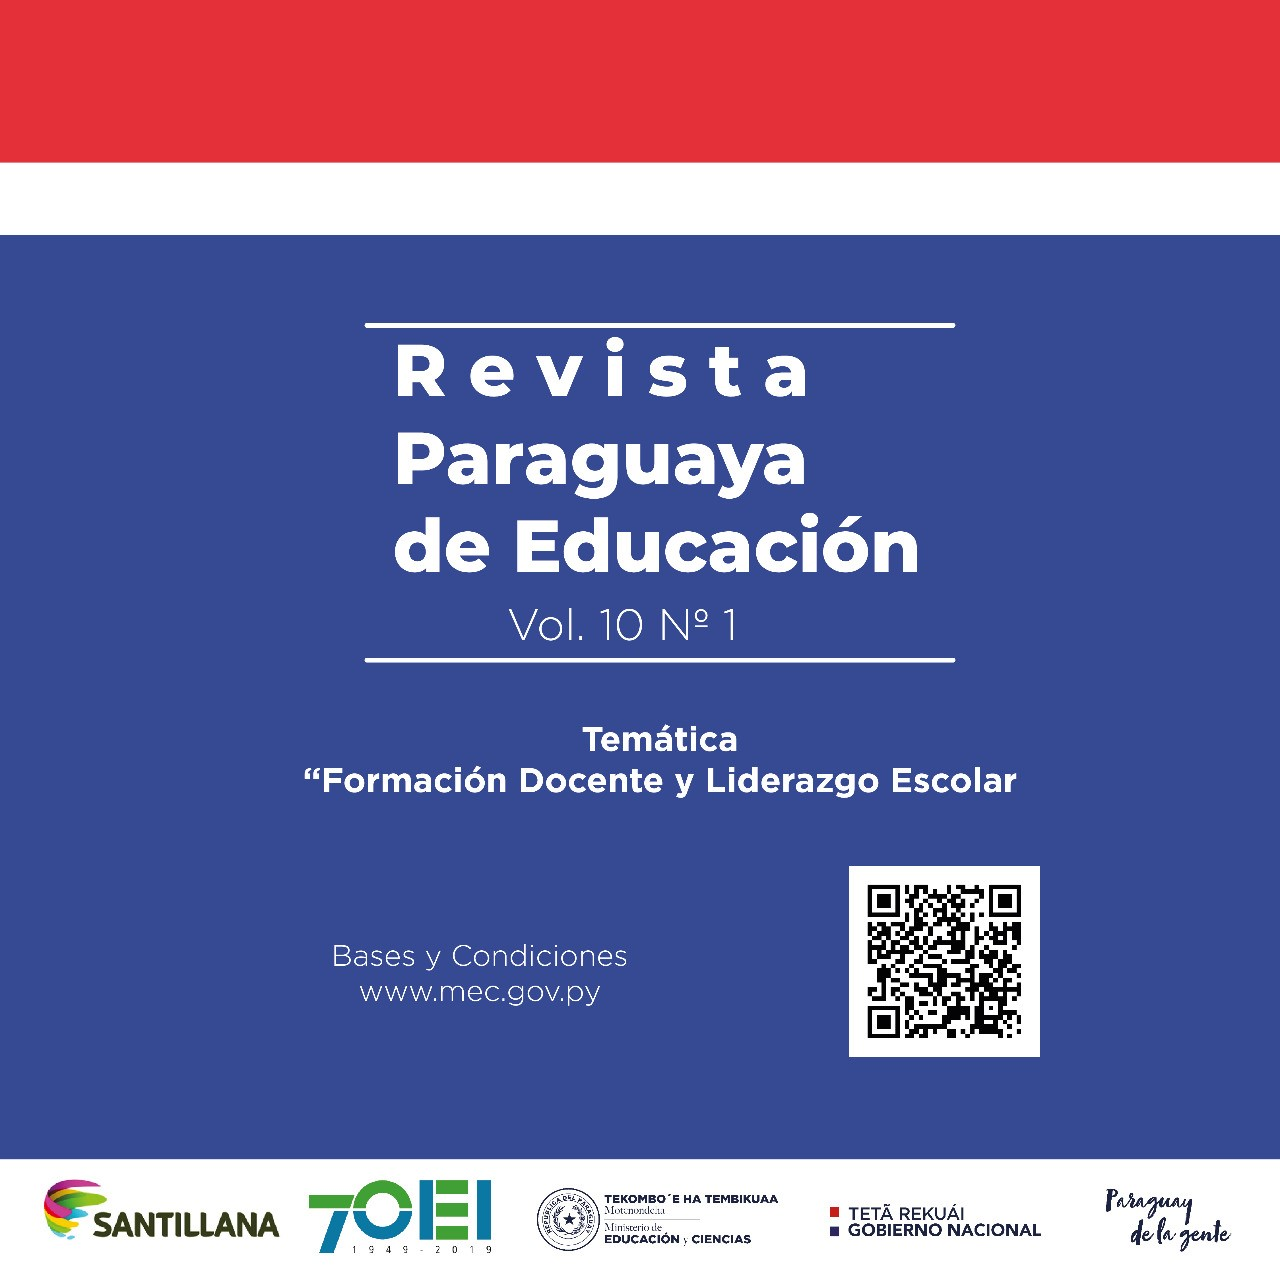 Recepción de artículos para la Revista Paraguaya de Educación Vol. 10, “Formación Docente y Liderazgo Escolar”.